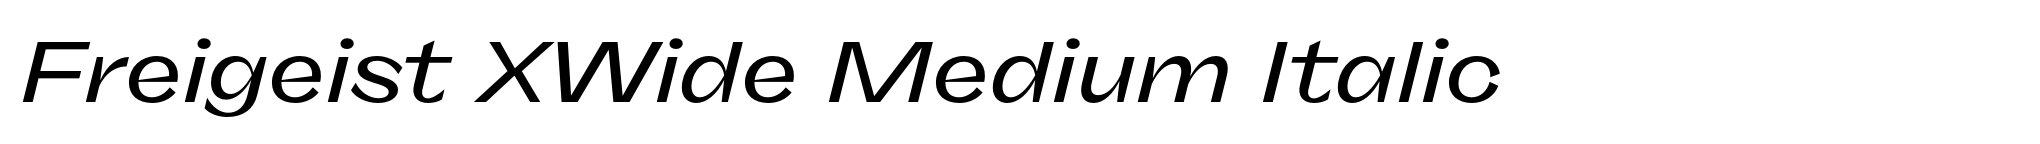 Freigeist XWide Medium Italic image